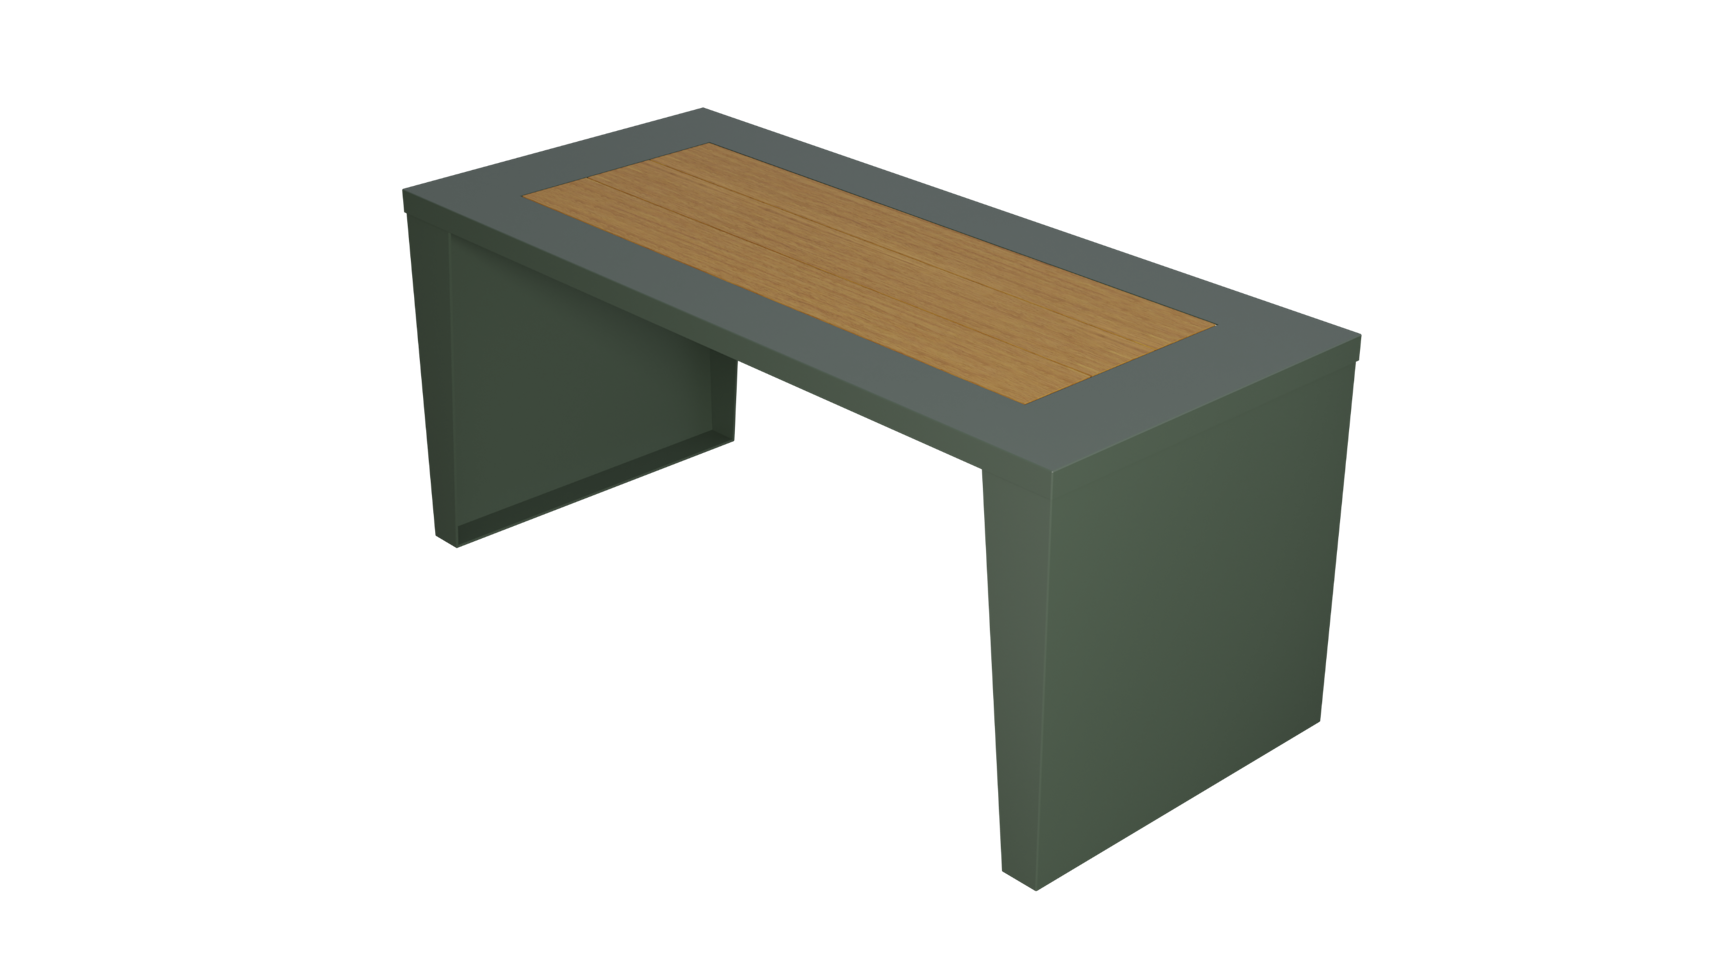 Merlino table by Raaft